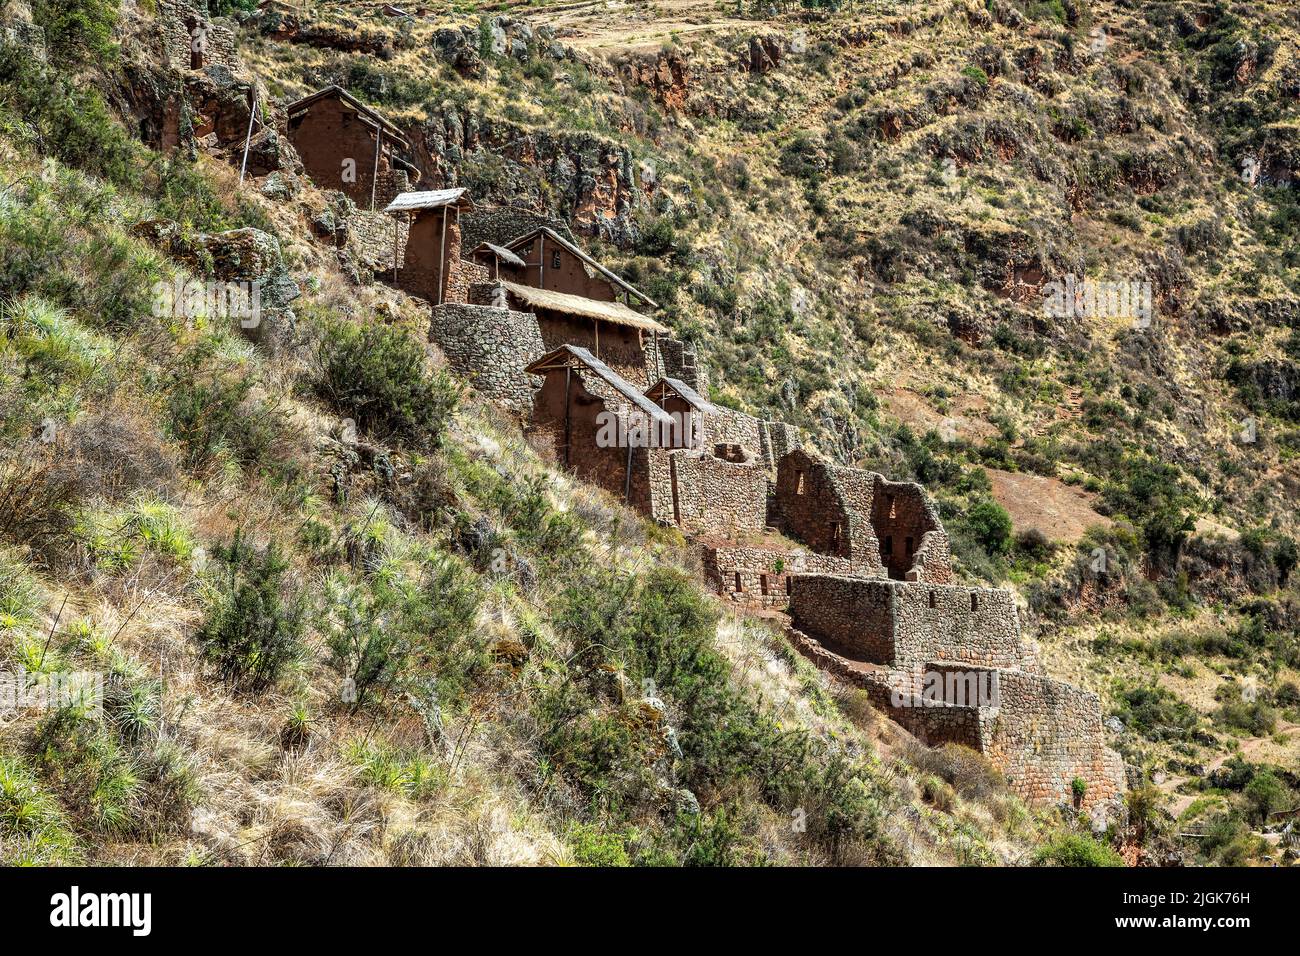 Buildings on cliff side, Pisac Inca ruins, Pisac, Cusco, Peru Stock Photo